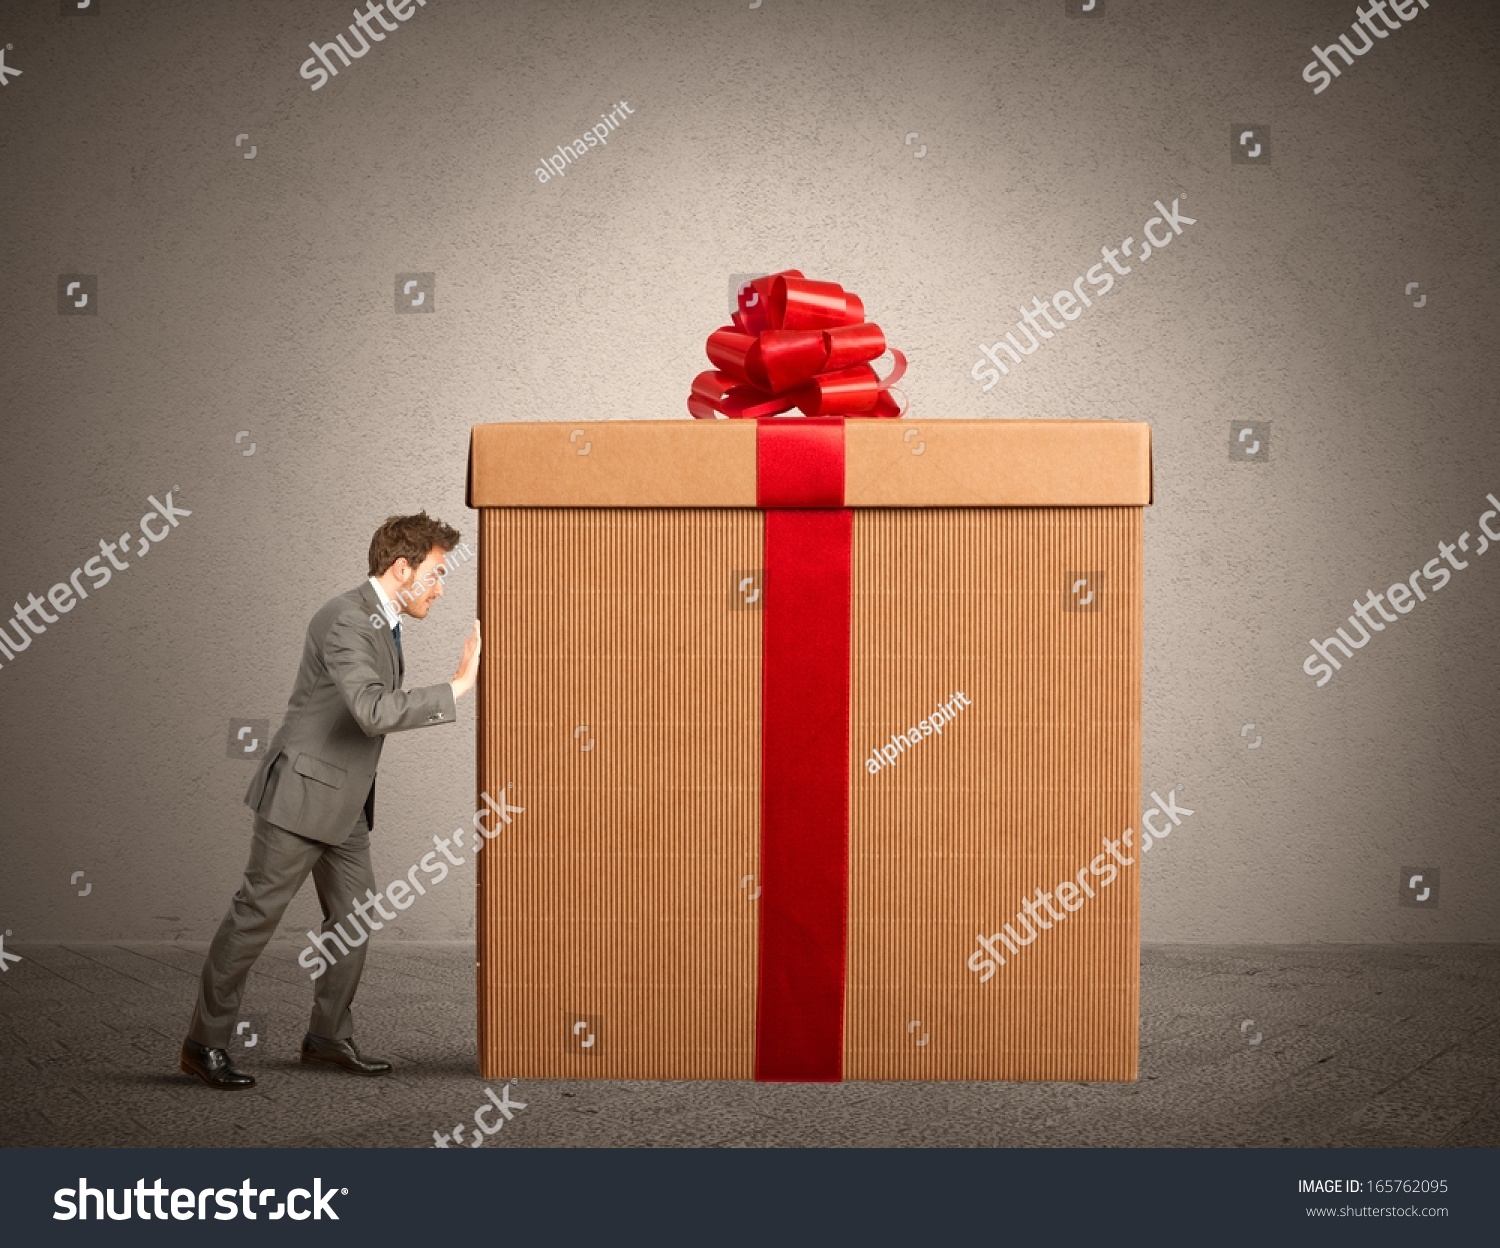 картинки больших коробок